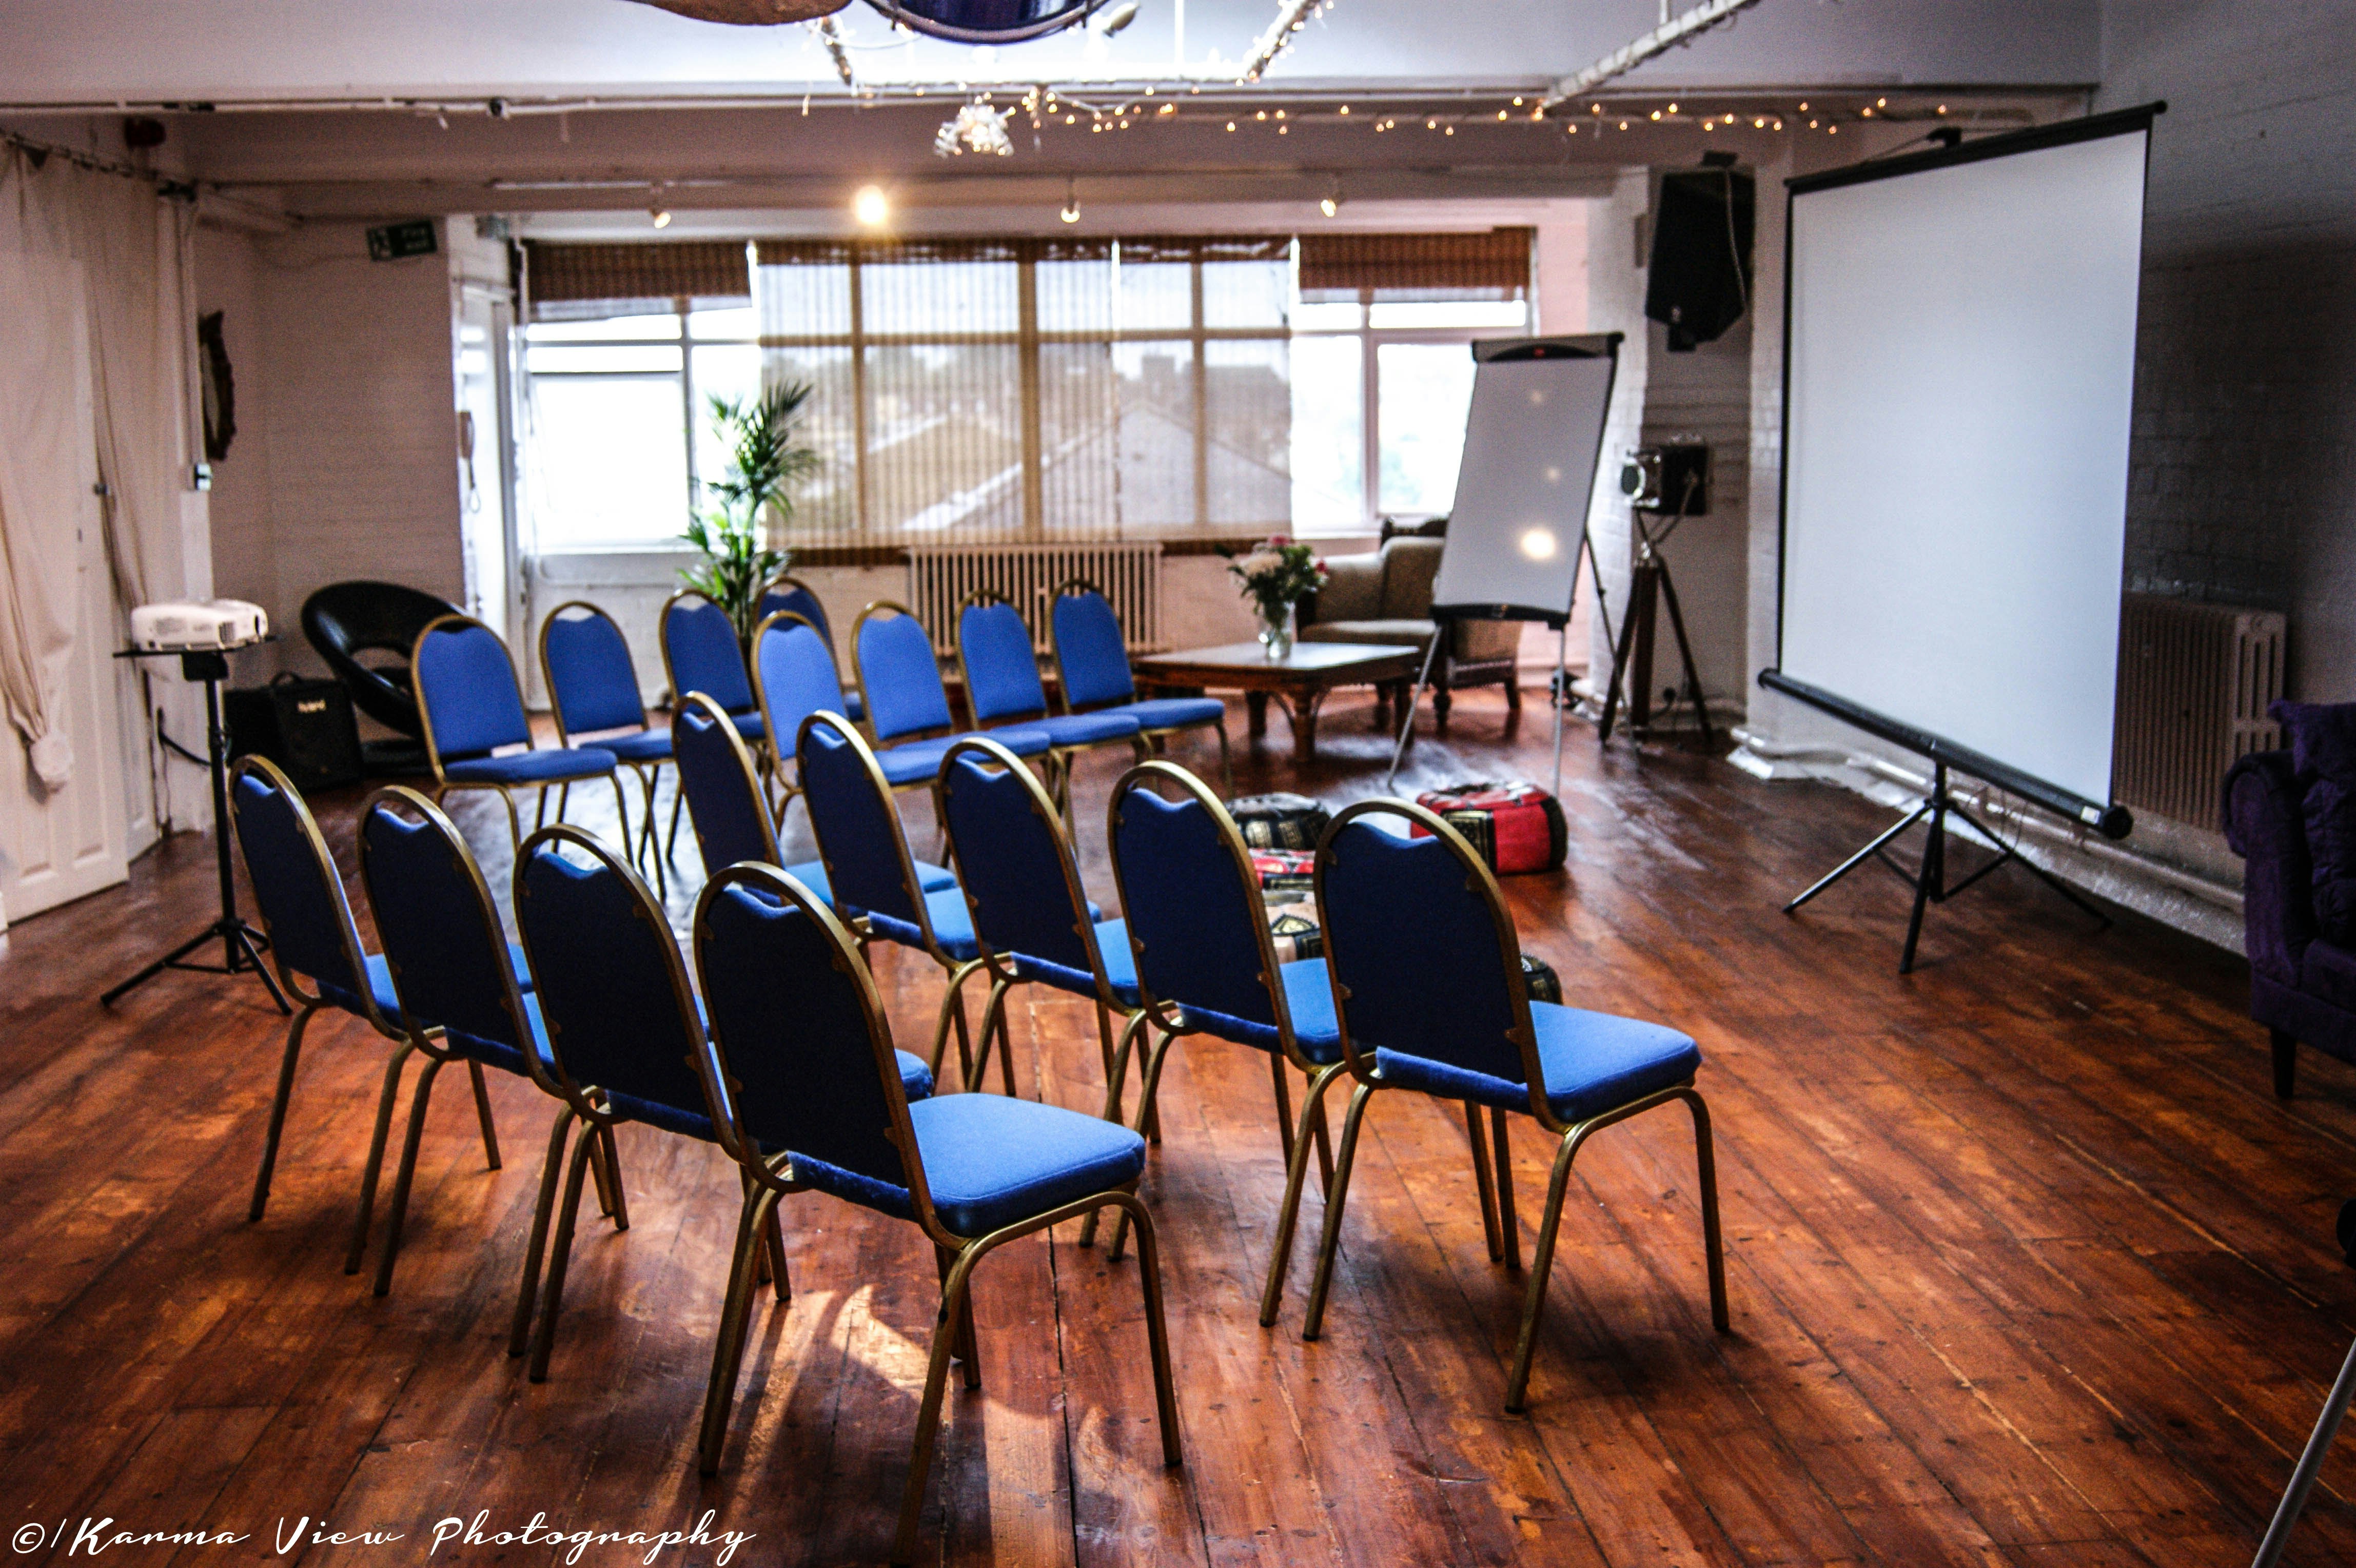 Creative Meeting Rooms Venues in London - 4th Floor Studios